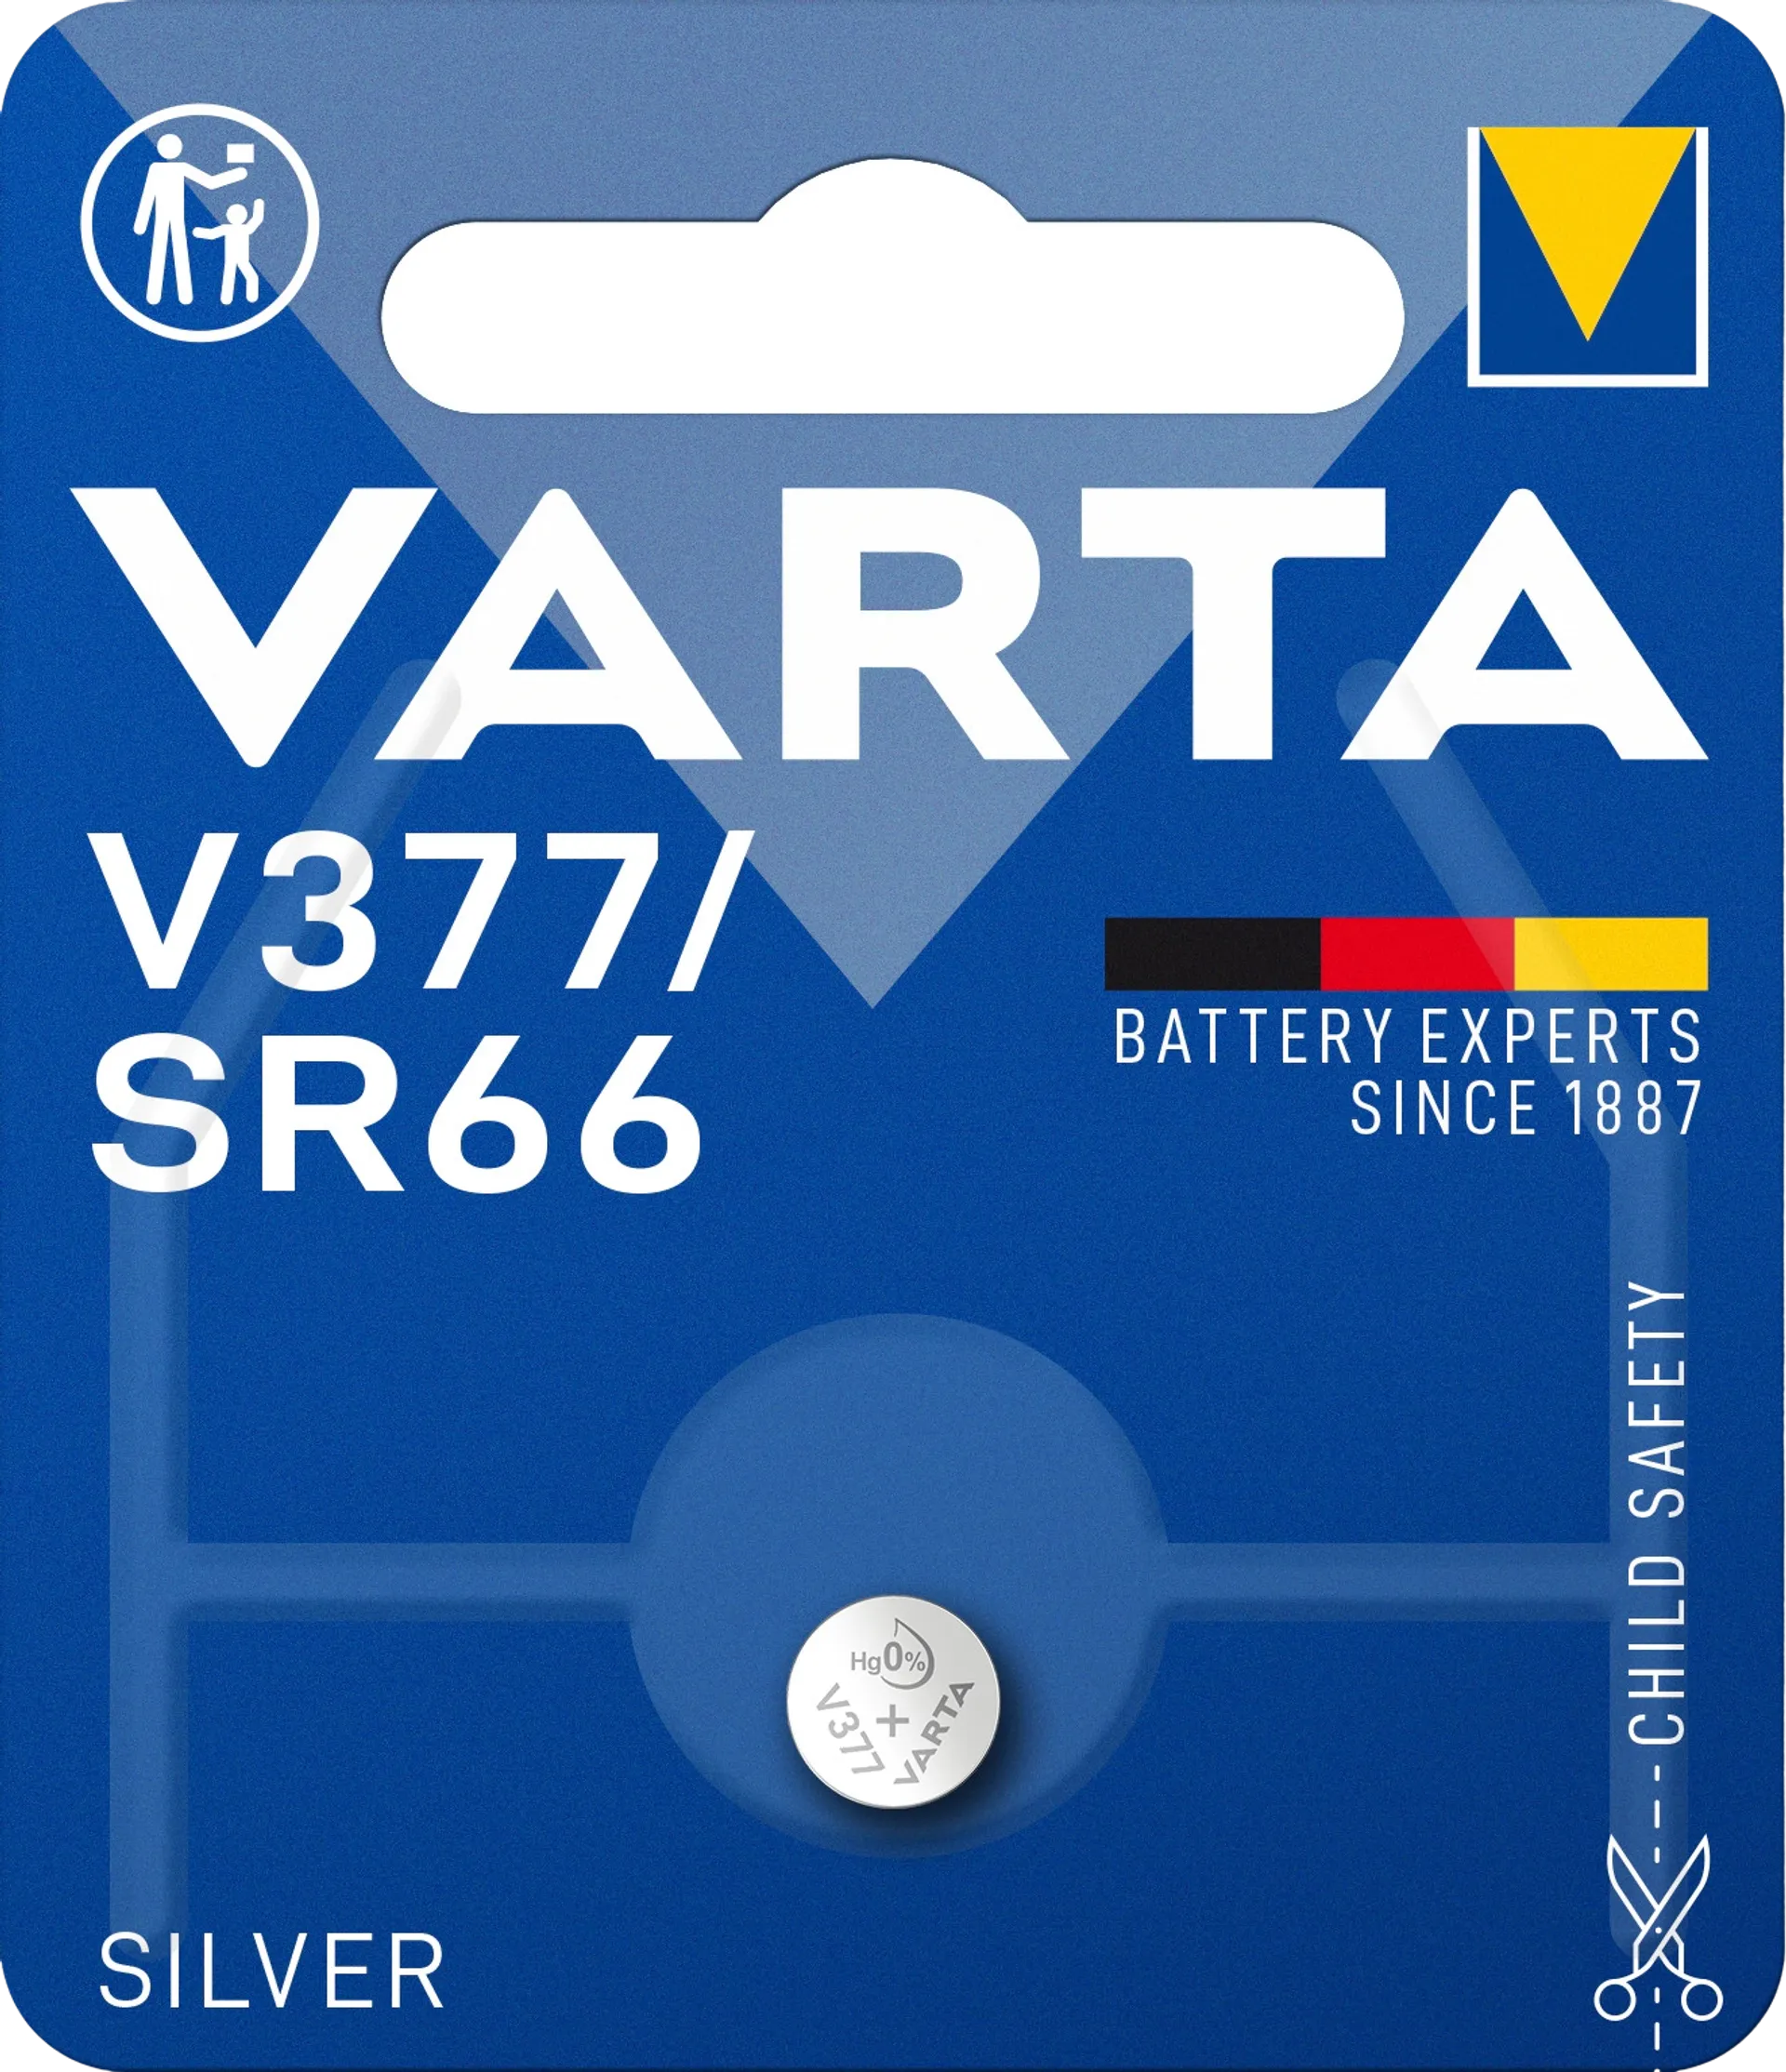 VARTA SILVER Coin V377/SR66 1kpl - 1